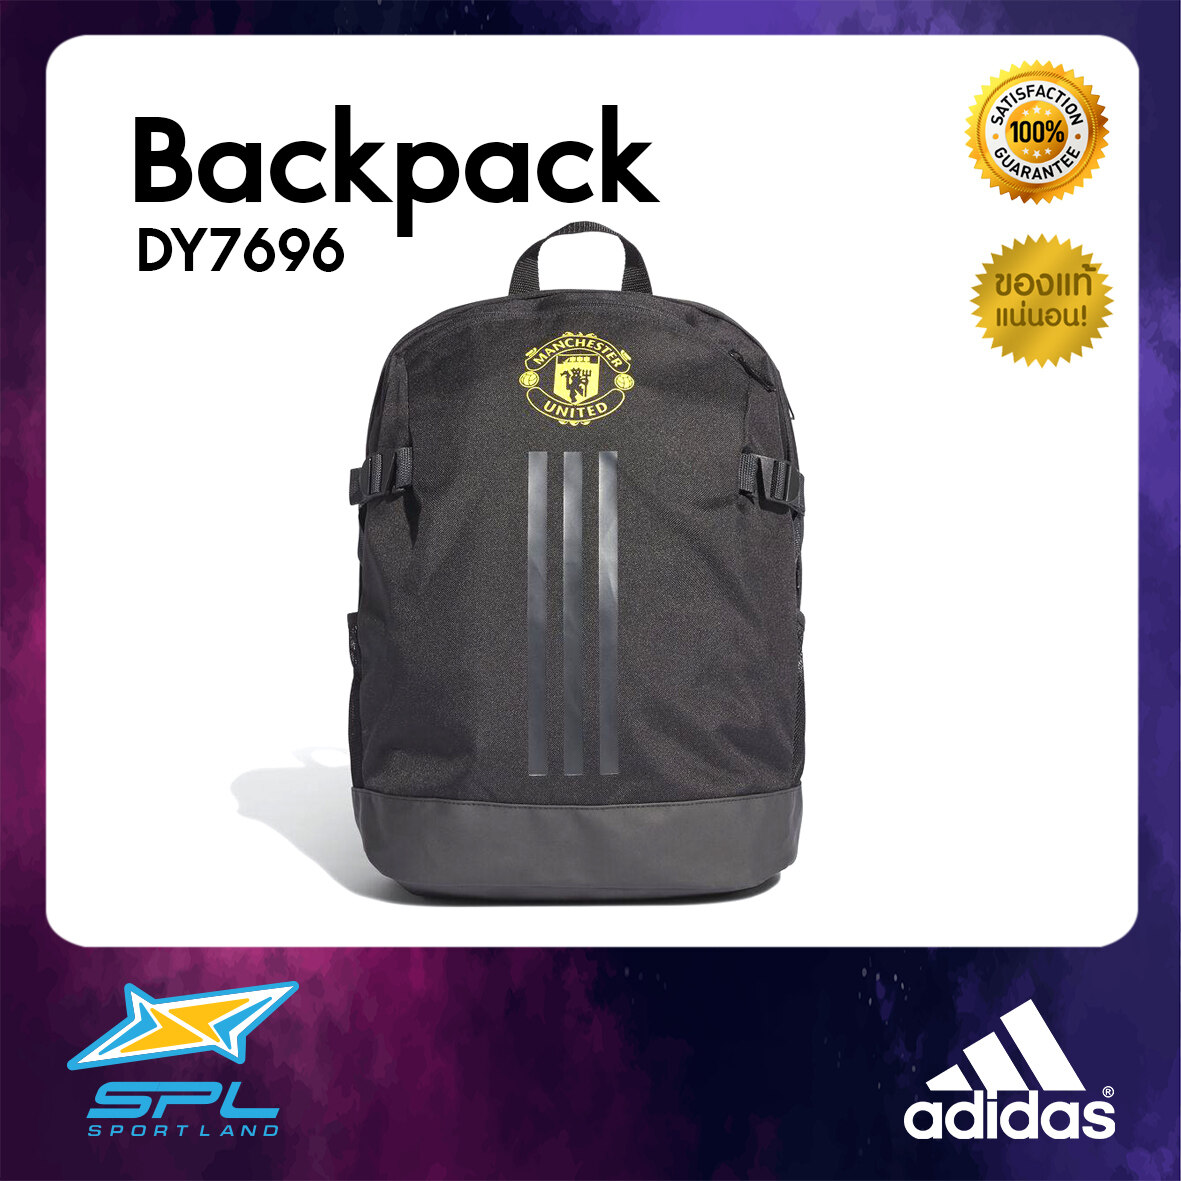 Adidas กระเป๋า กระเป๋าสะพายหลัง กระเป๋าเป้ กระเป๋ากีฬา กระเป๋าแมนเชสเตอร์ยูไนเต็ด อาดิดาส Football Backpack Manchester United FC DY7696 (1000)